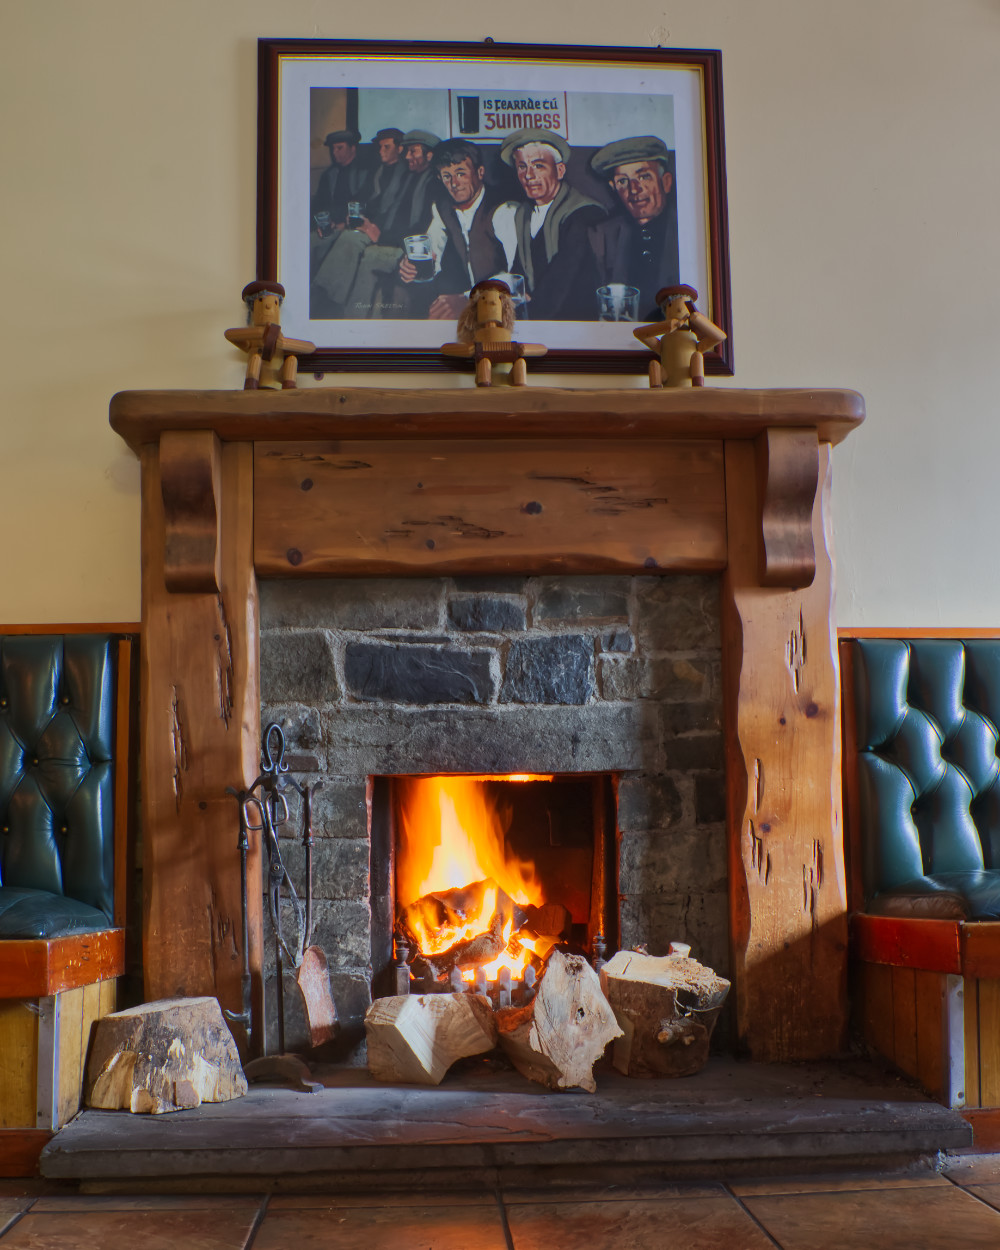 Fireplace in Keane's